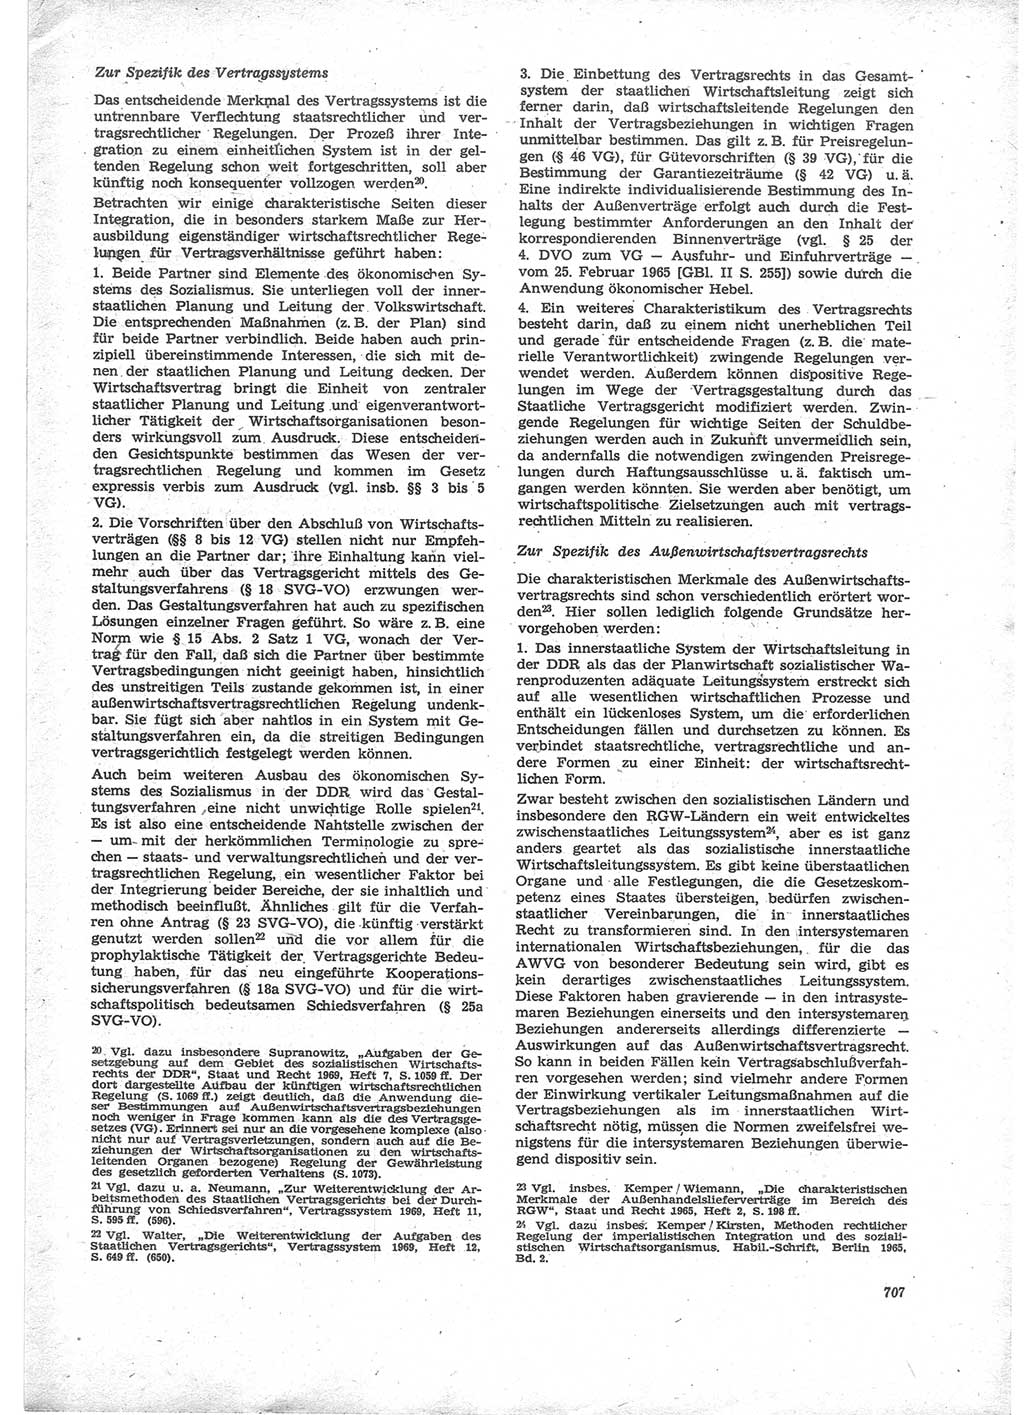 Neue Justiz (NJ), Zeitschrift für Recht und Rechtswissenschaft [Deutsche Demokratische Republik (DDR)], 24. Jahrgang 1970, Seite 707 (NJ DDR 1970, S. 707)